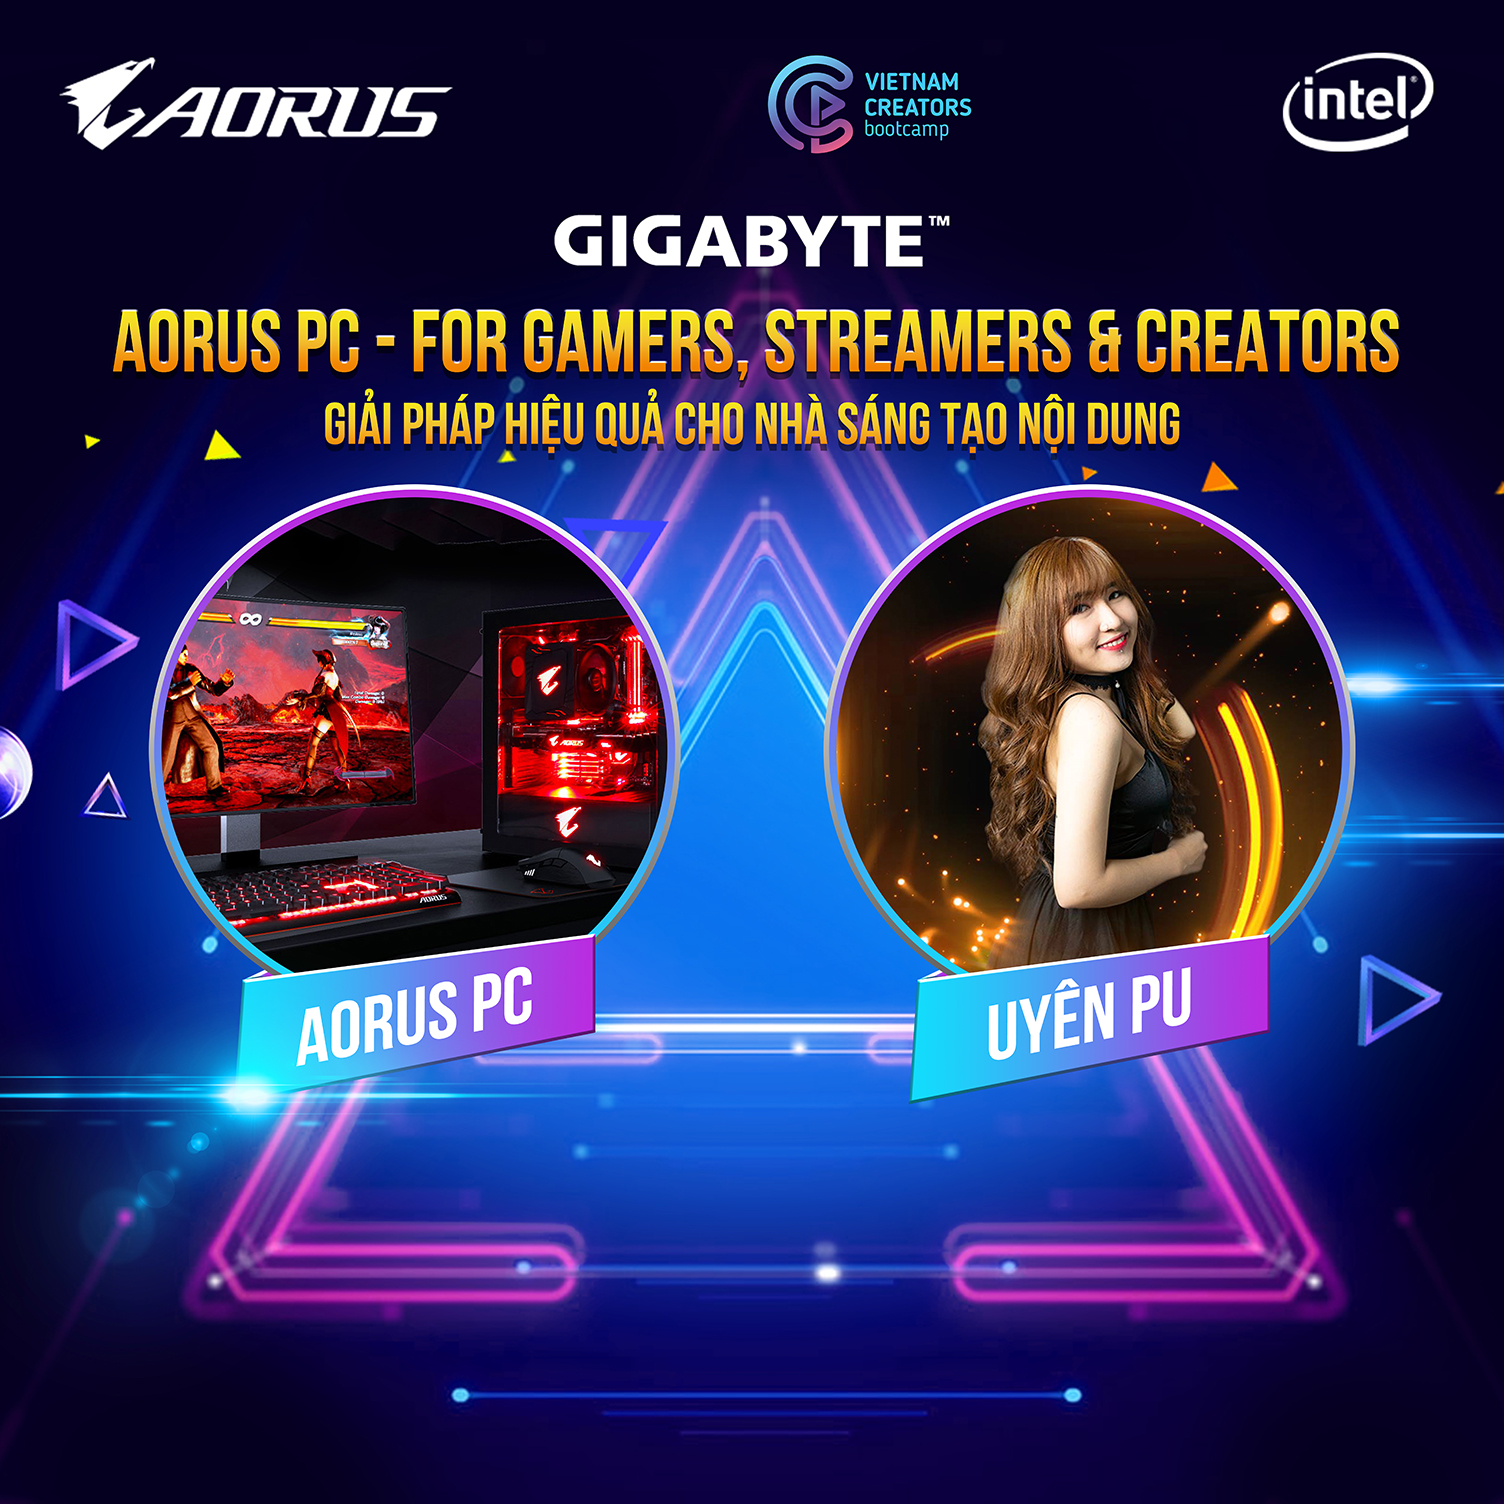 AORUS PC - FOR GAMERS, STREAMERS & CREATORS